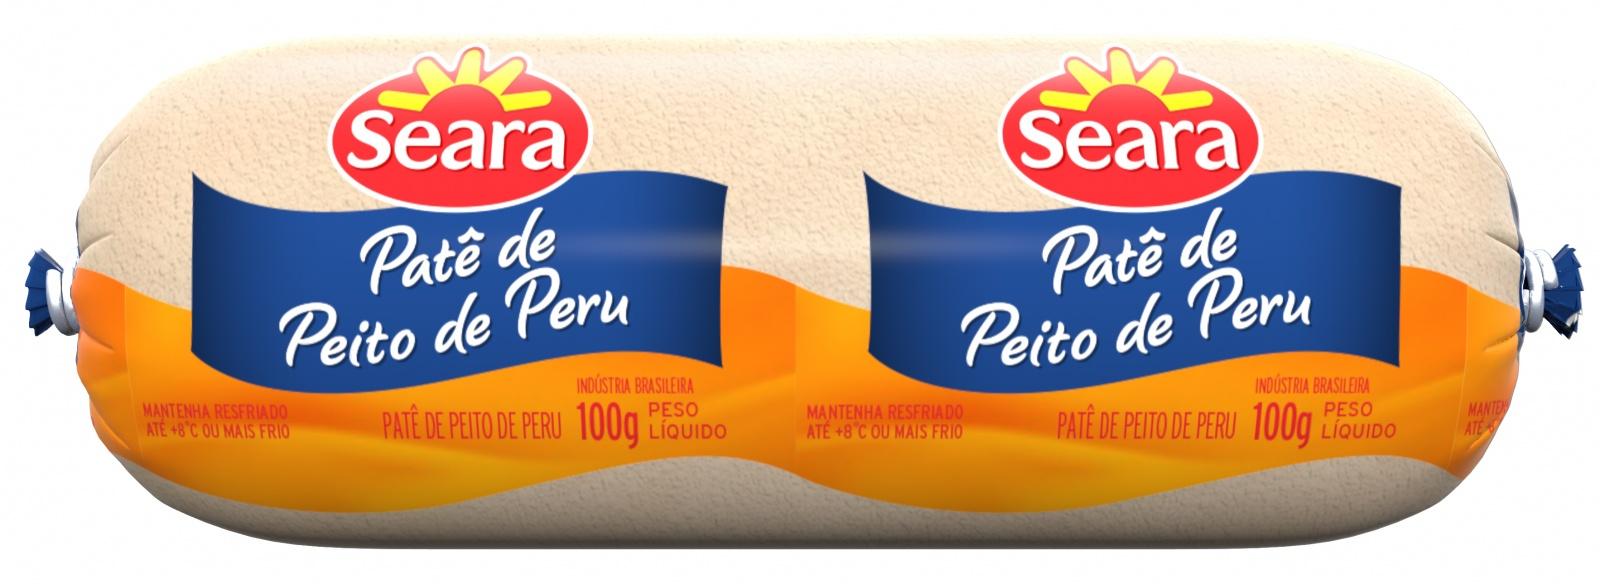 Patê Peito de Peru Def. 100g